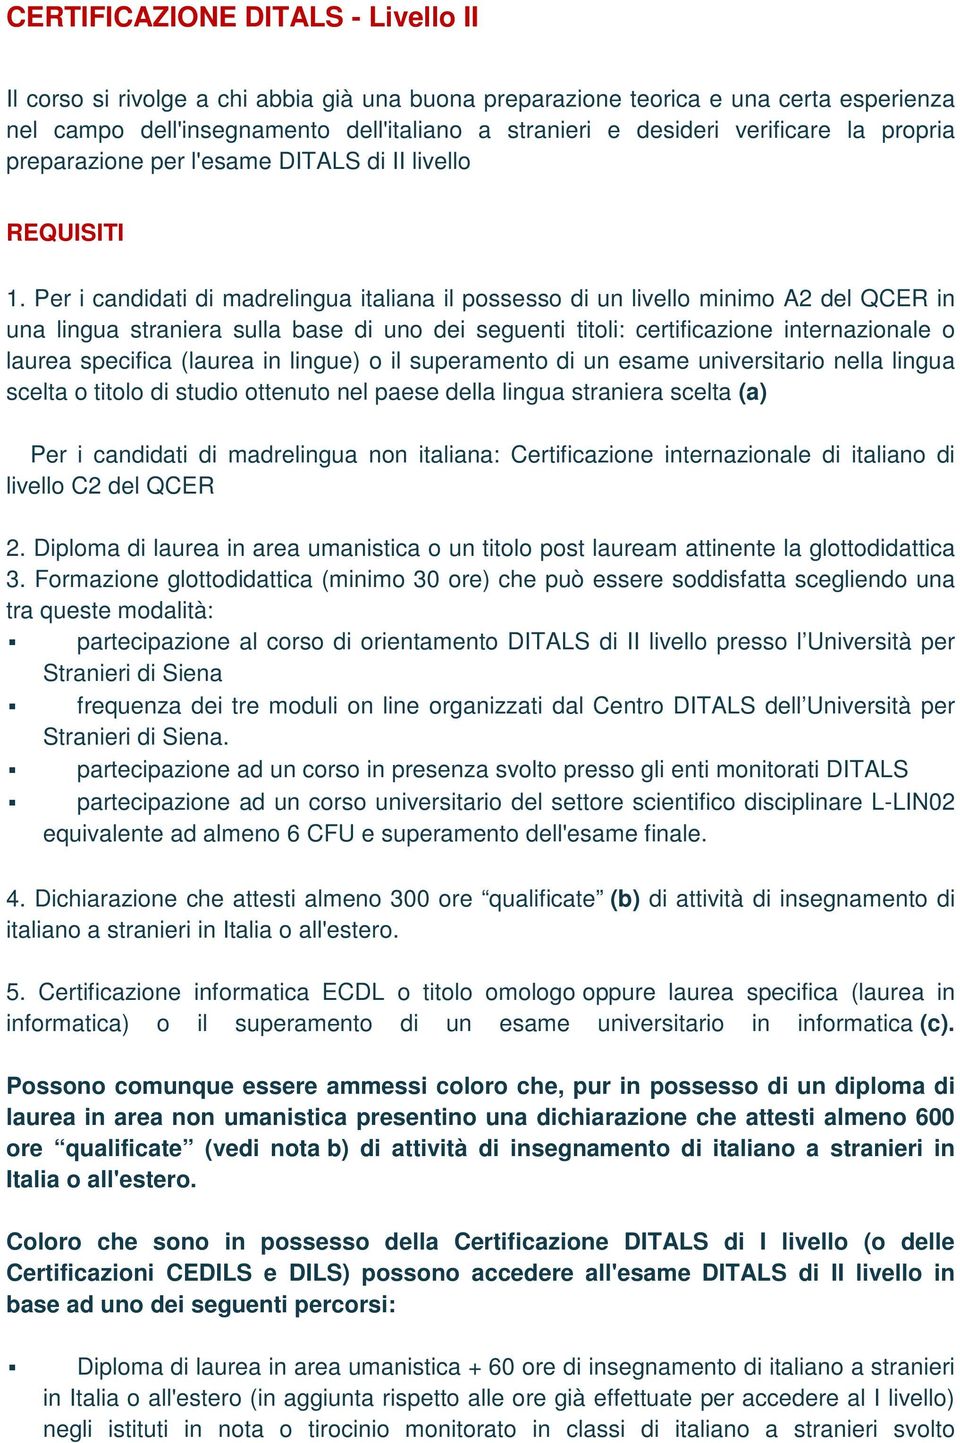 Per i candidati di madrelingua italiana il possesso di un livello minimo A2 del QCER in una lingua straniera sulla base di uno dei seguenti titoli: certificazione internazionale o laurea specifica